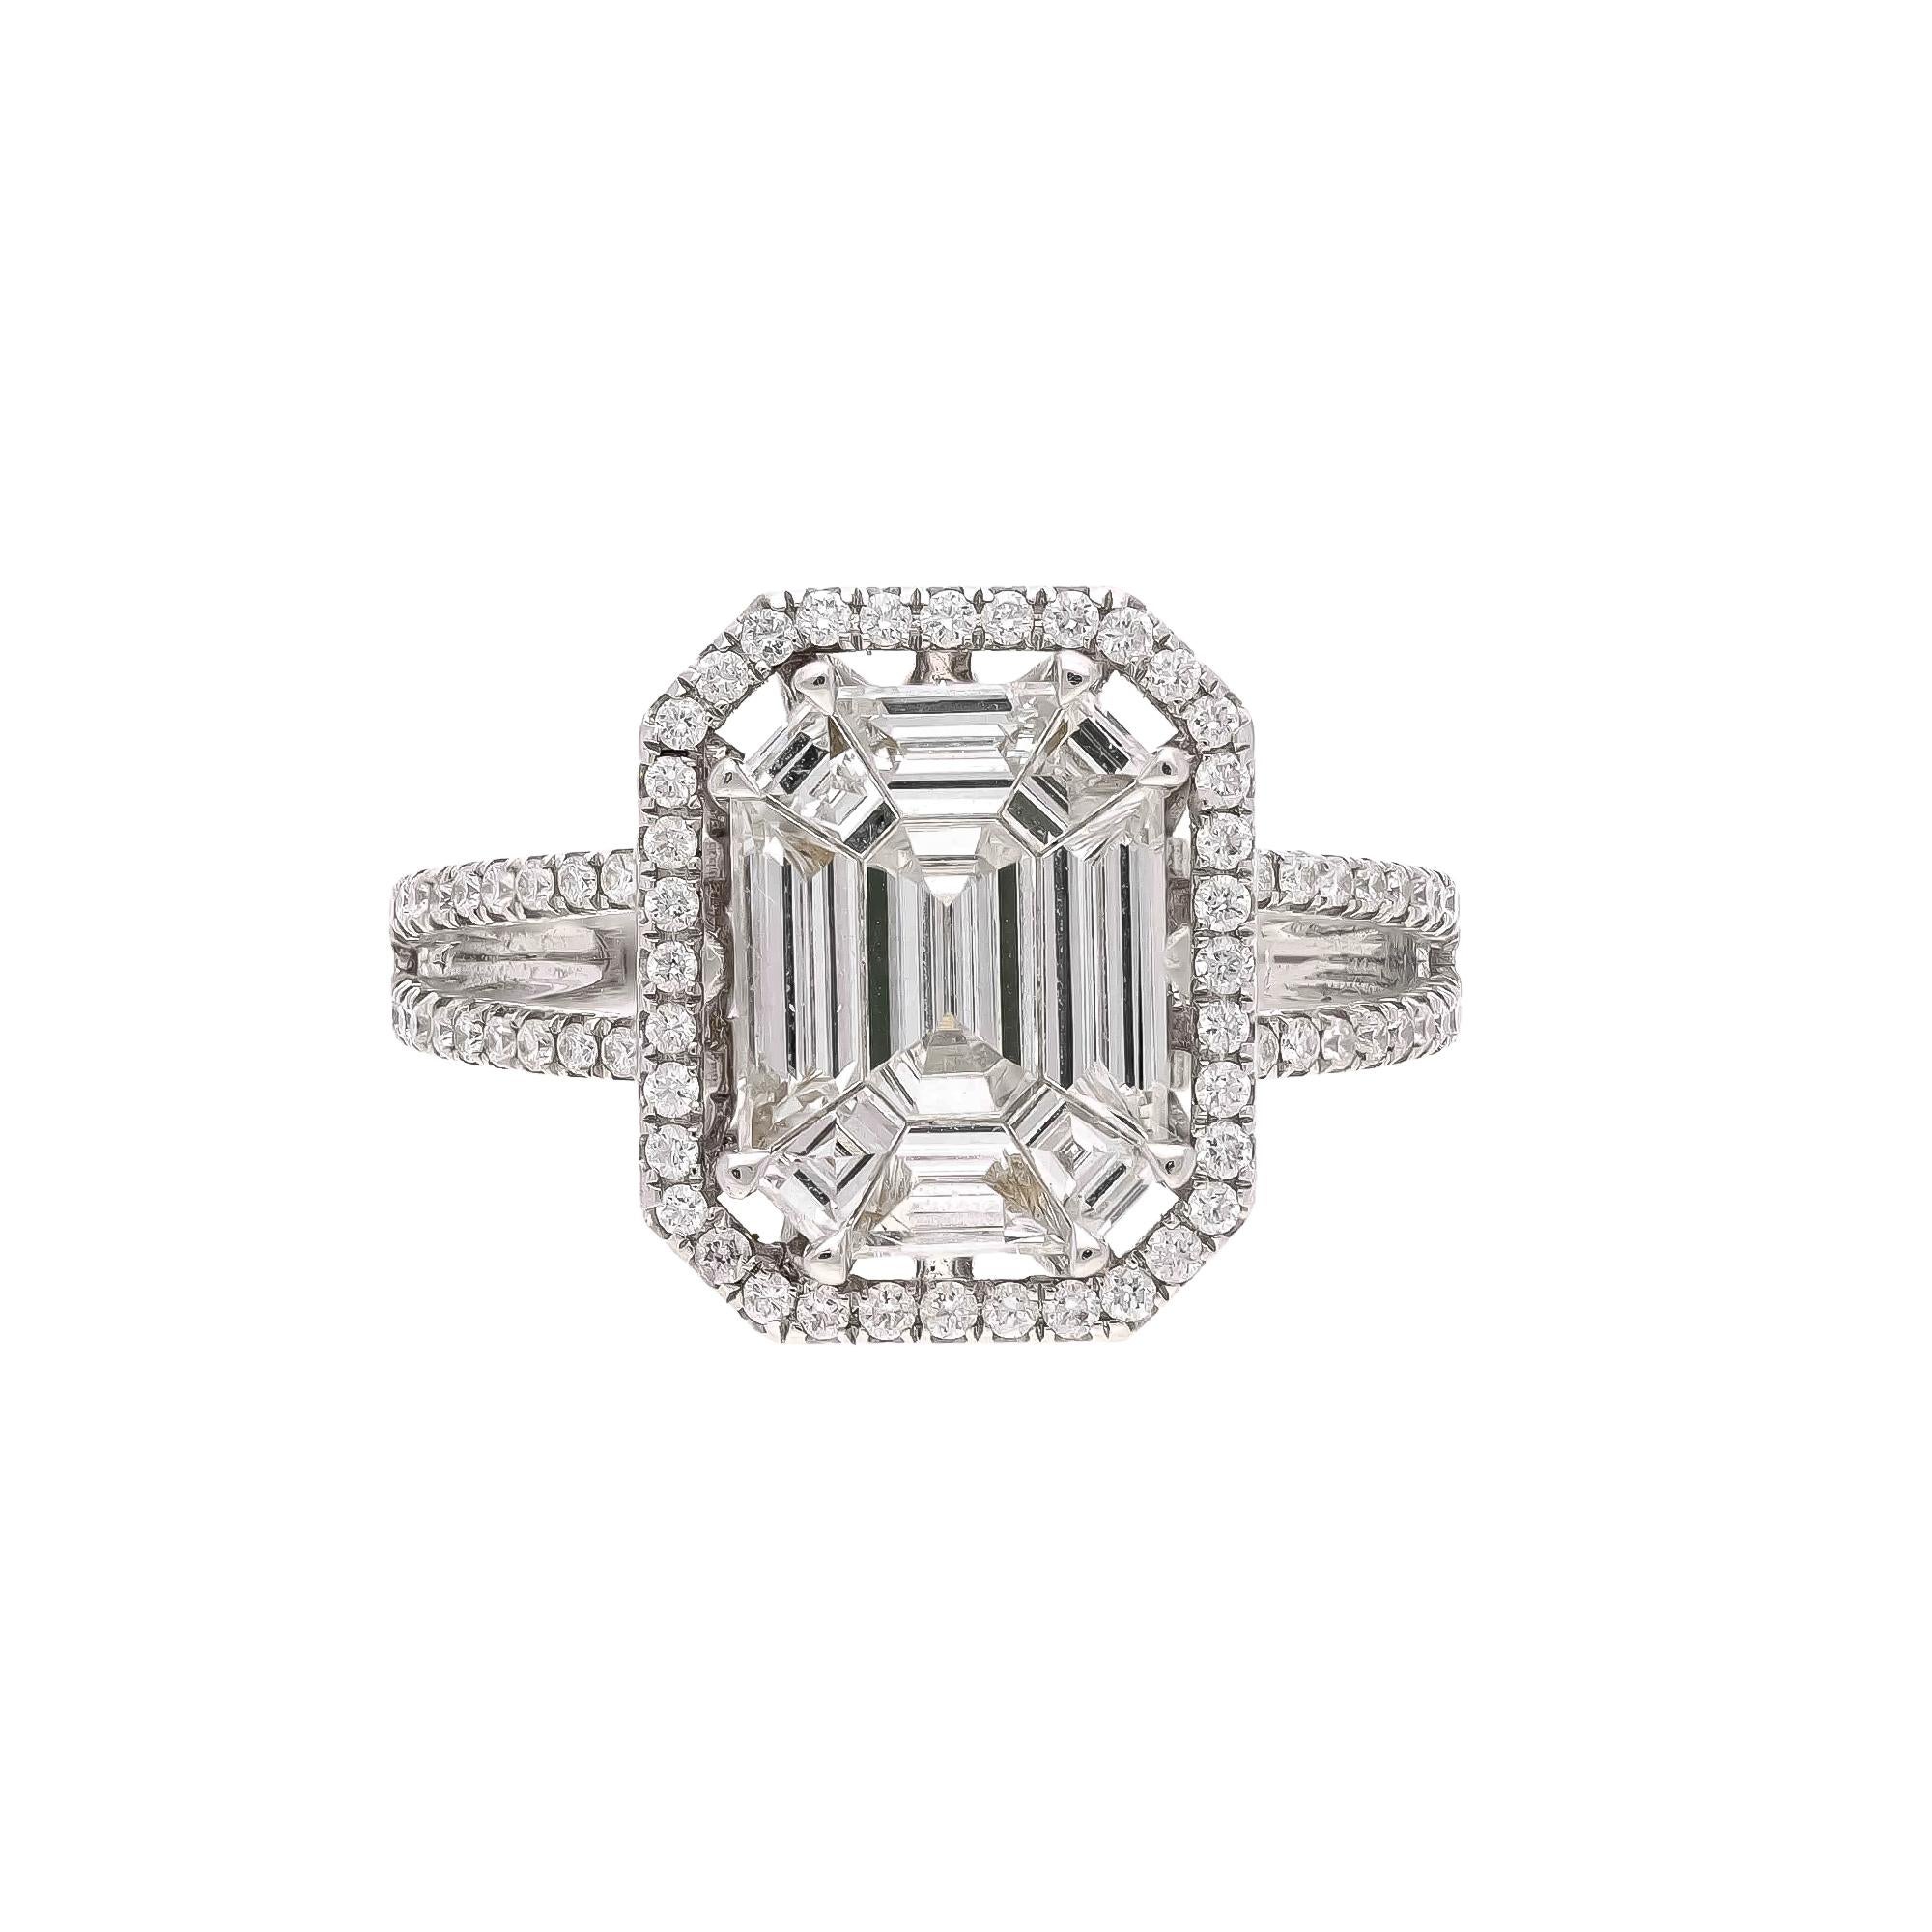 Dies ist eine wunderbare natürliche Diamant-Ring. Es hat eine sehr hohe Qualität und sehr gute Qualität Diamanten ( vsi ) Klarheit und G Farbe.

Diamanten : 1,80 Karat
Gold : 4.21 Gramm

Farbe ist FG und Reinheit ist VVS



Es ist sehr schwer, die